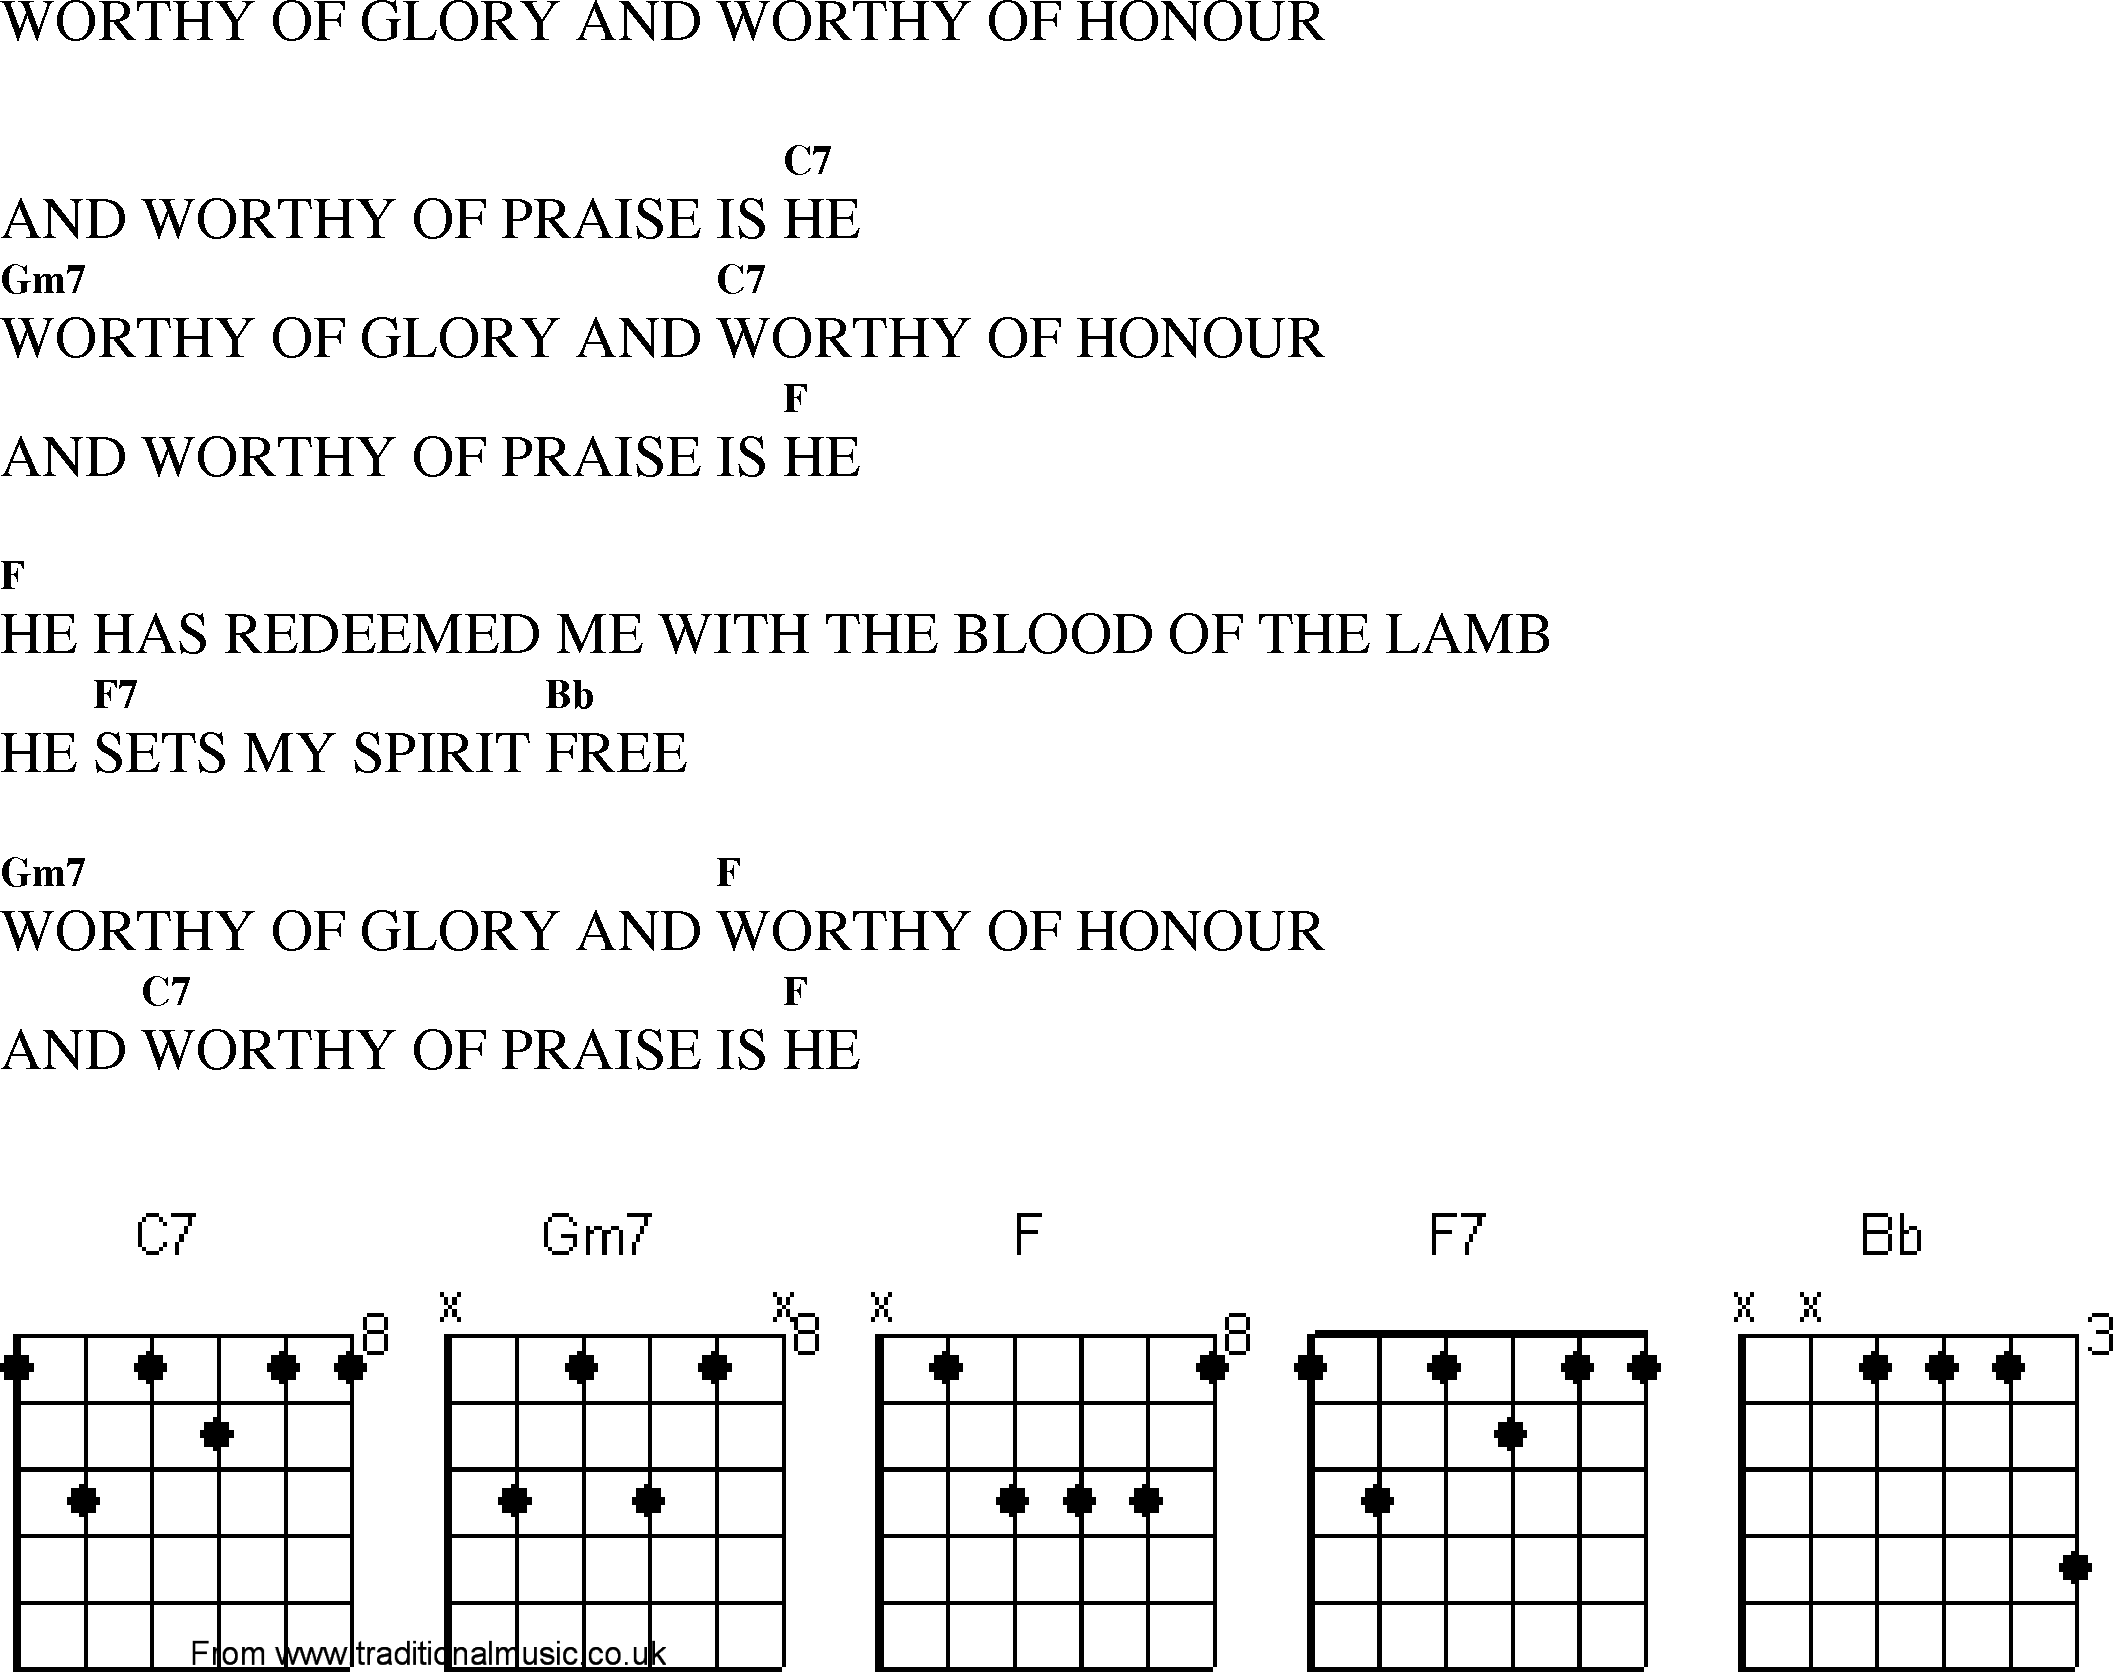 Gospel Song: worthy_of_glory_n_worthy_of_honour, lyrics and chords.